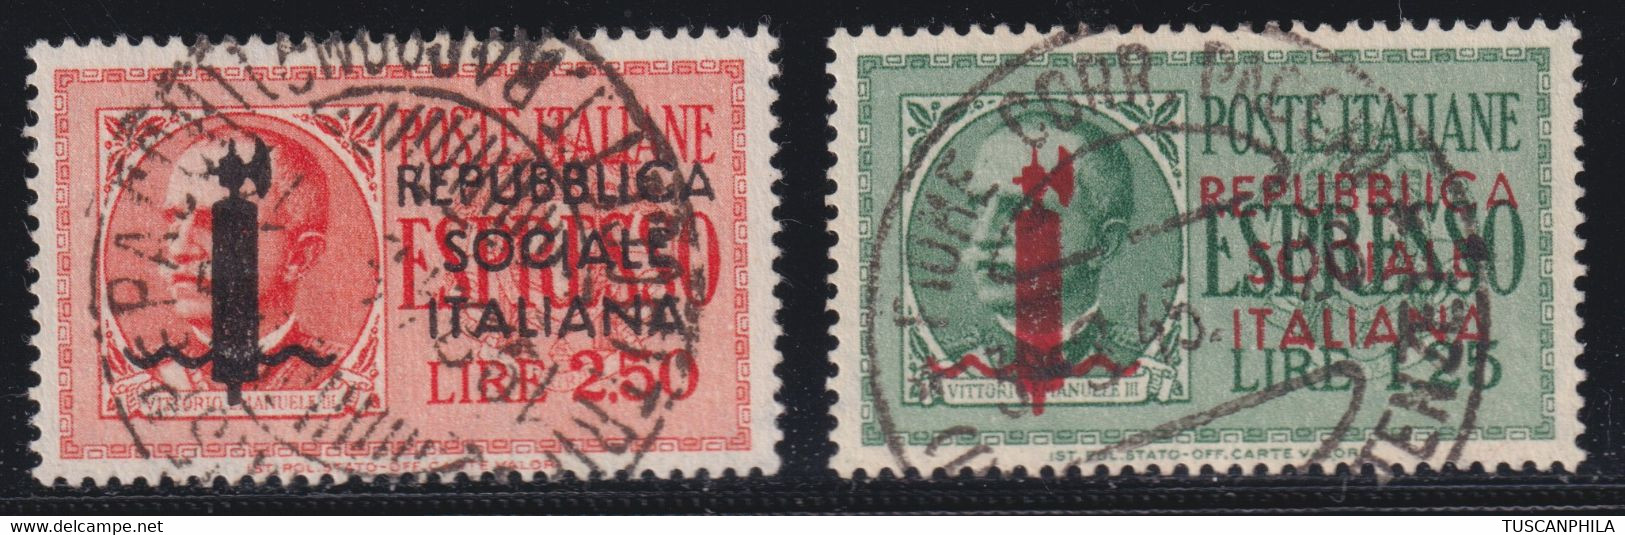 Repubblica Sociale 1944 Espressi Serie Completa Sass. 21/22 Usato - Express Mail